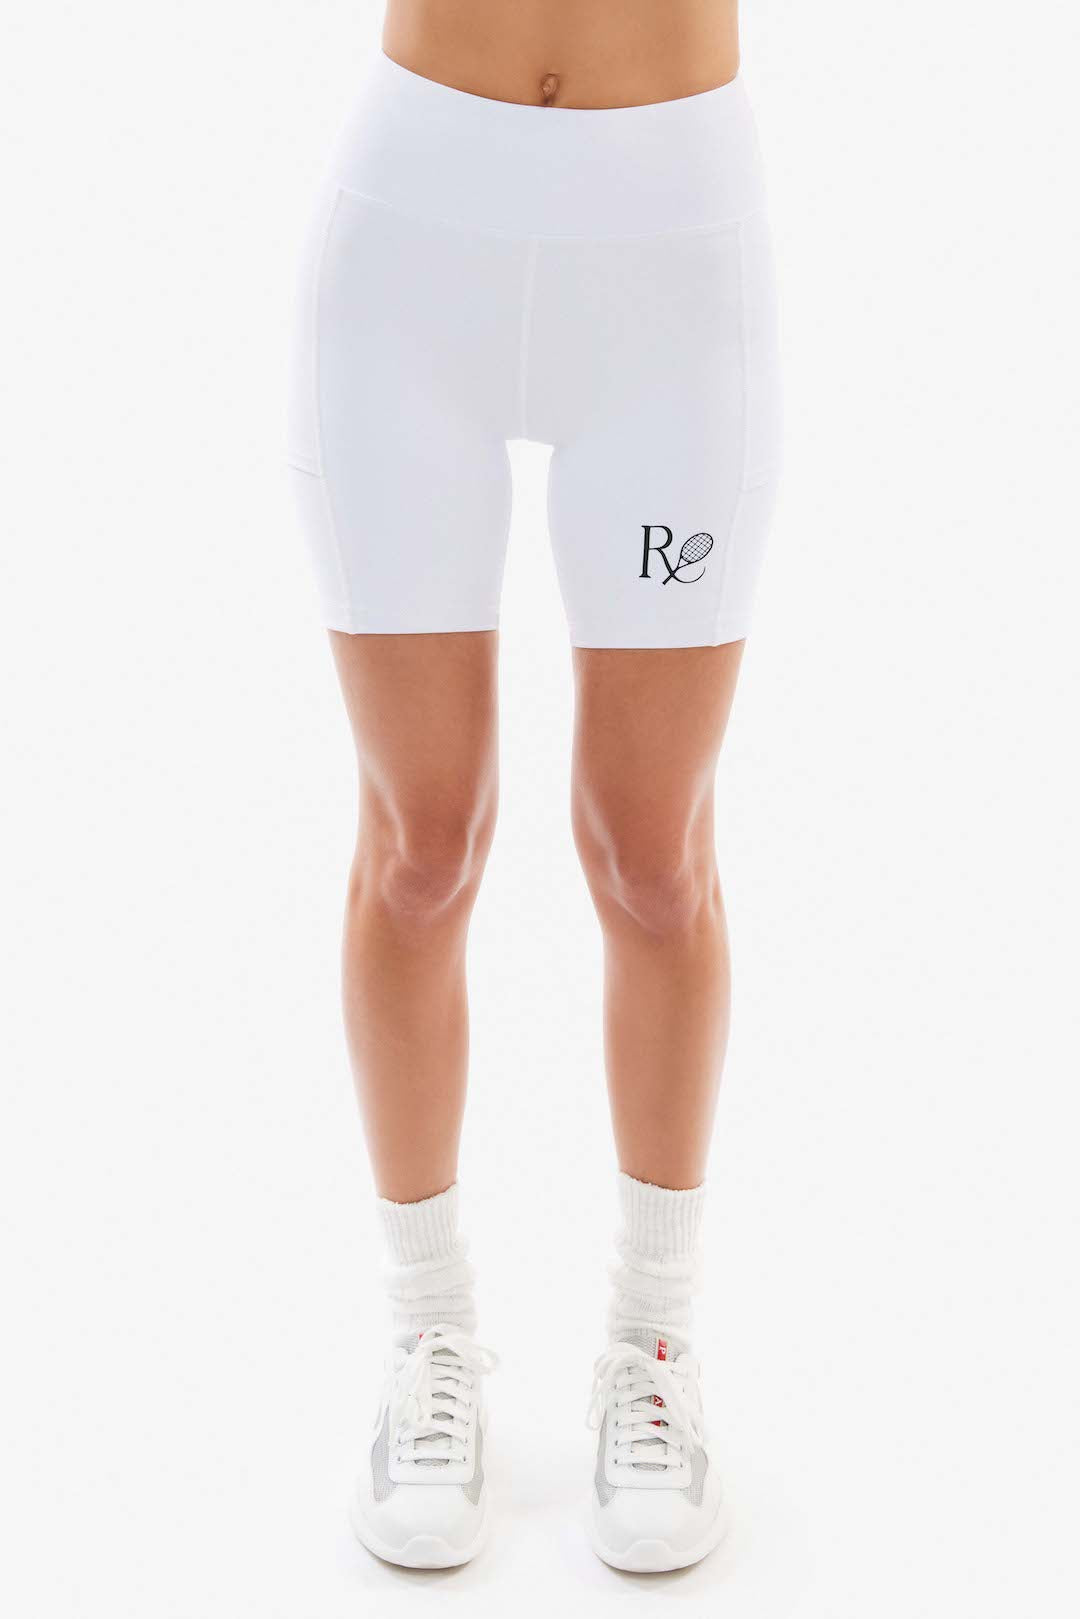 Ball Pocket Biker Shorts / White